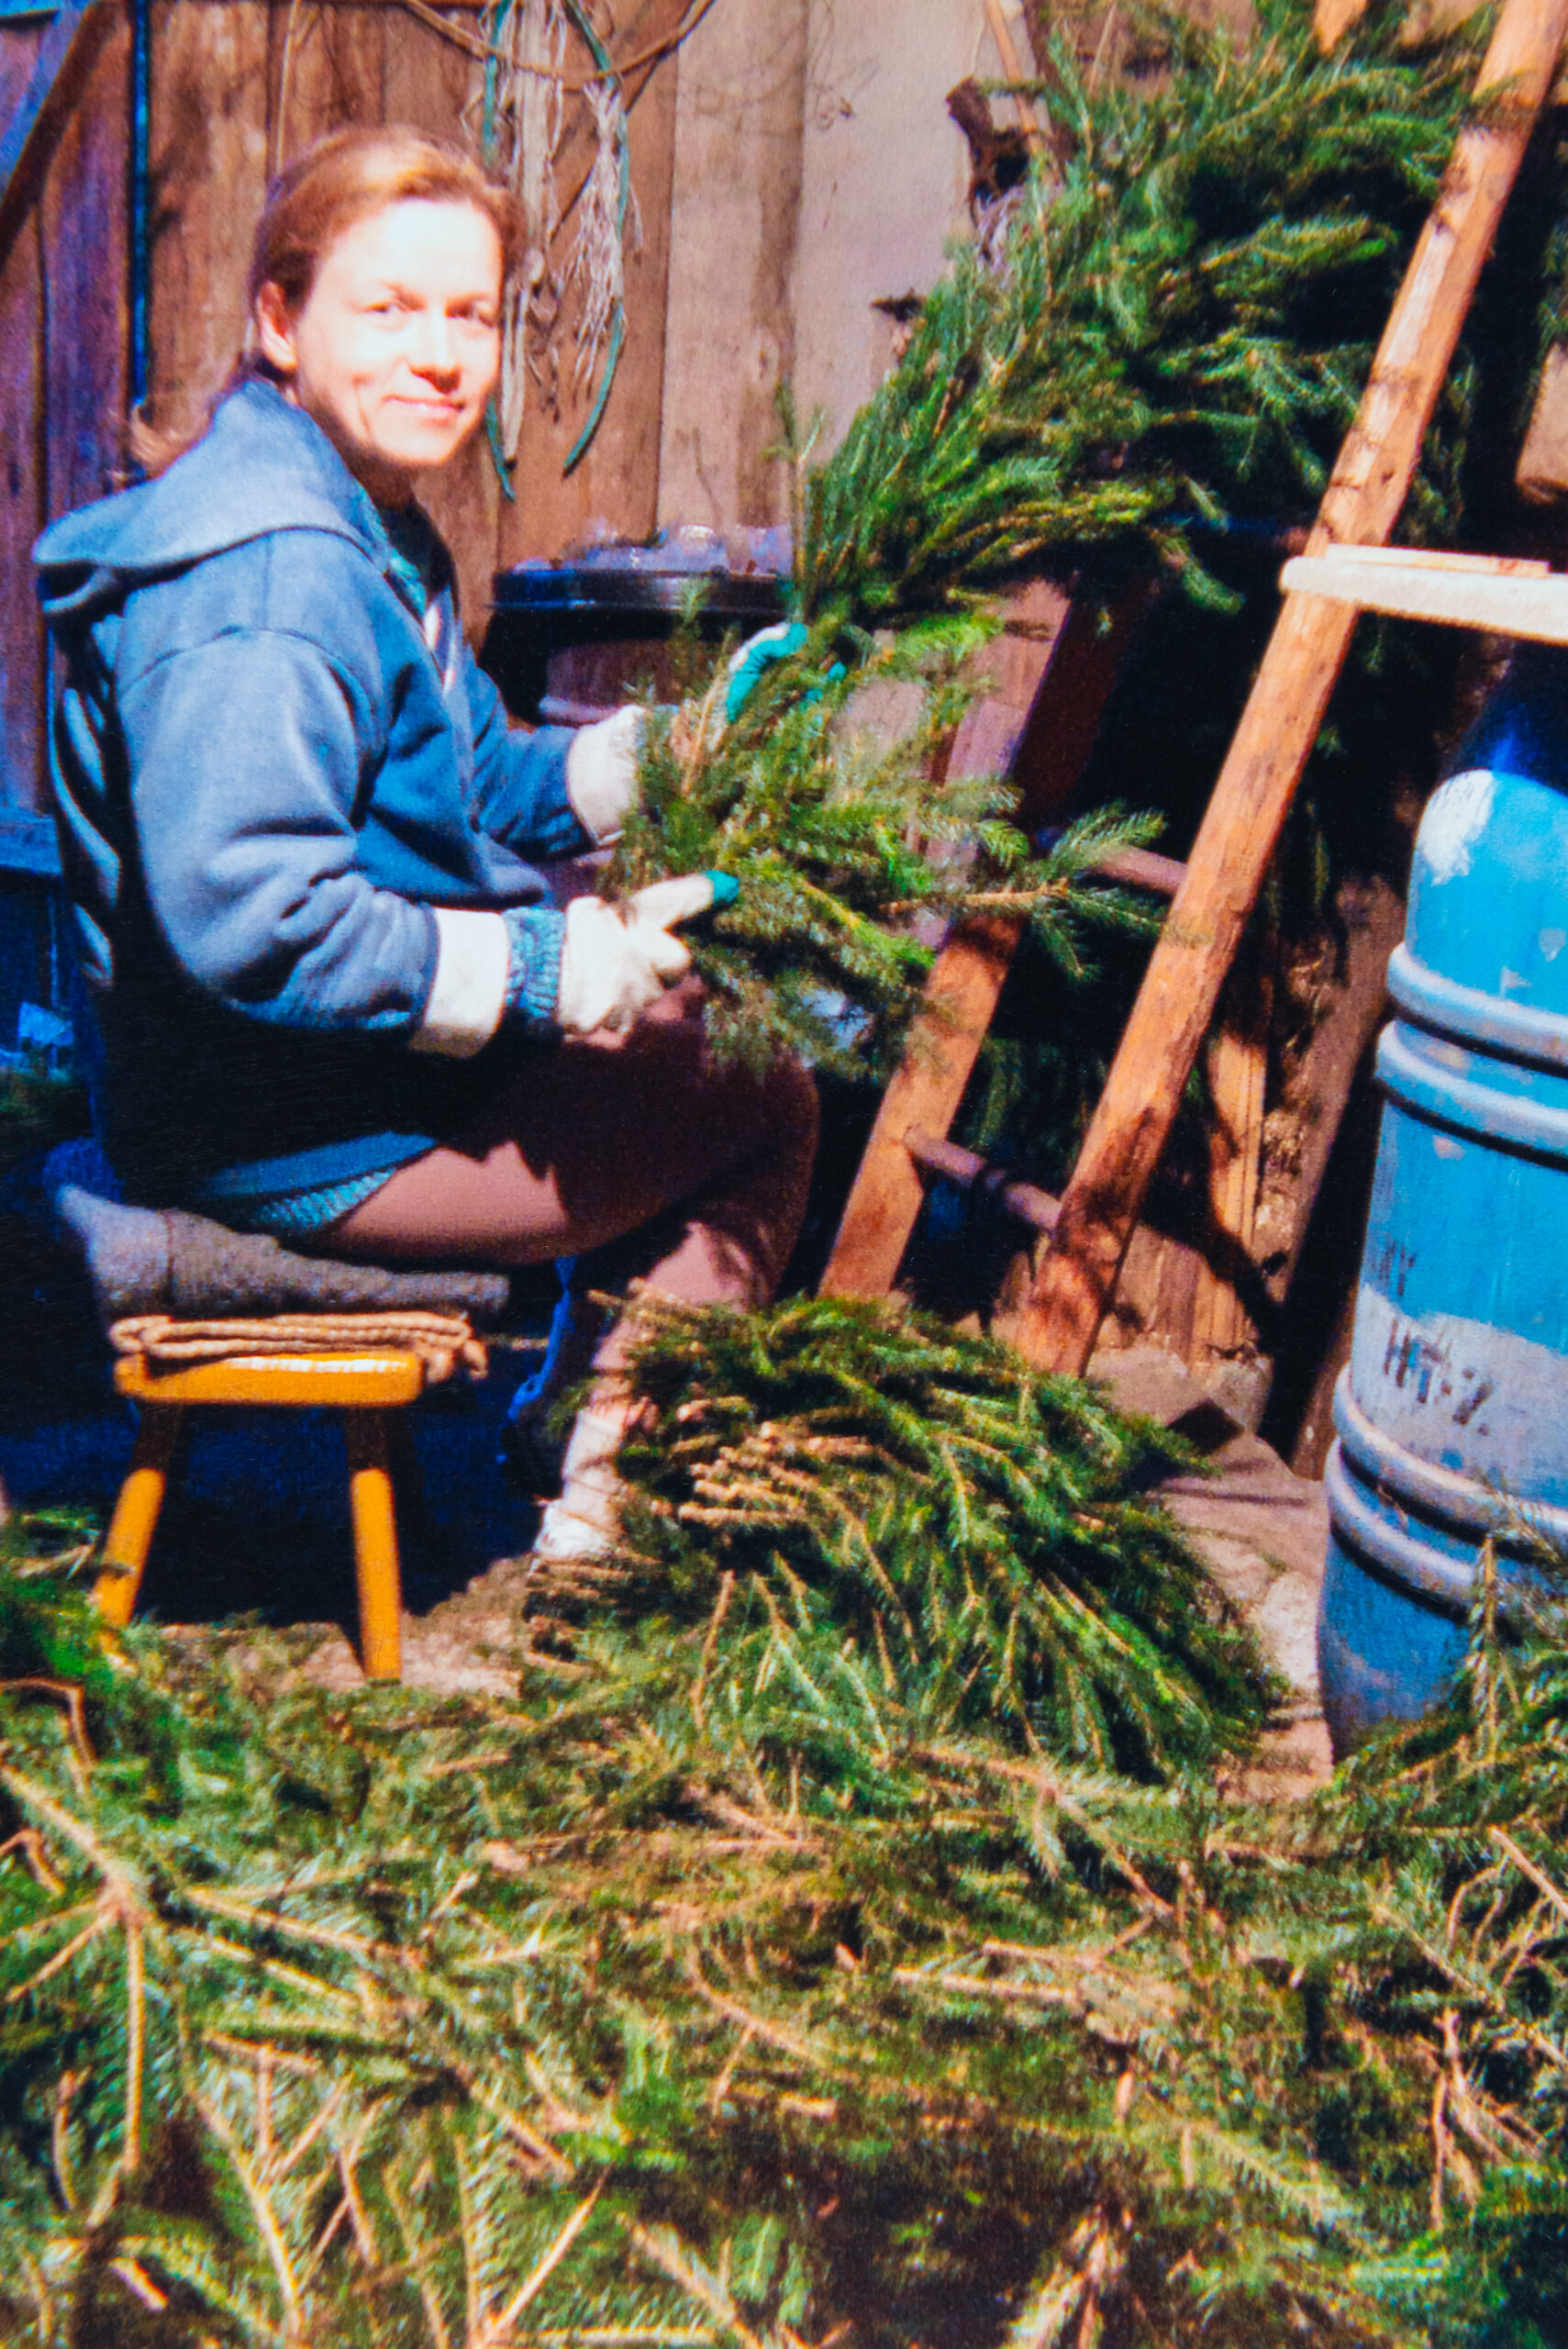 Kobieta w niebieskiej bluzie siedzi i przygotowuje gałęzie iglaste, duża ilość roślin spoczywa na ziemi.